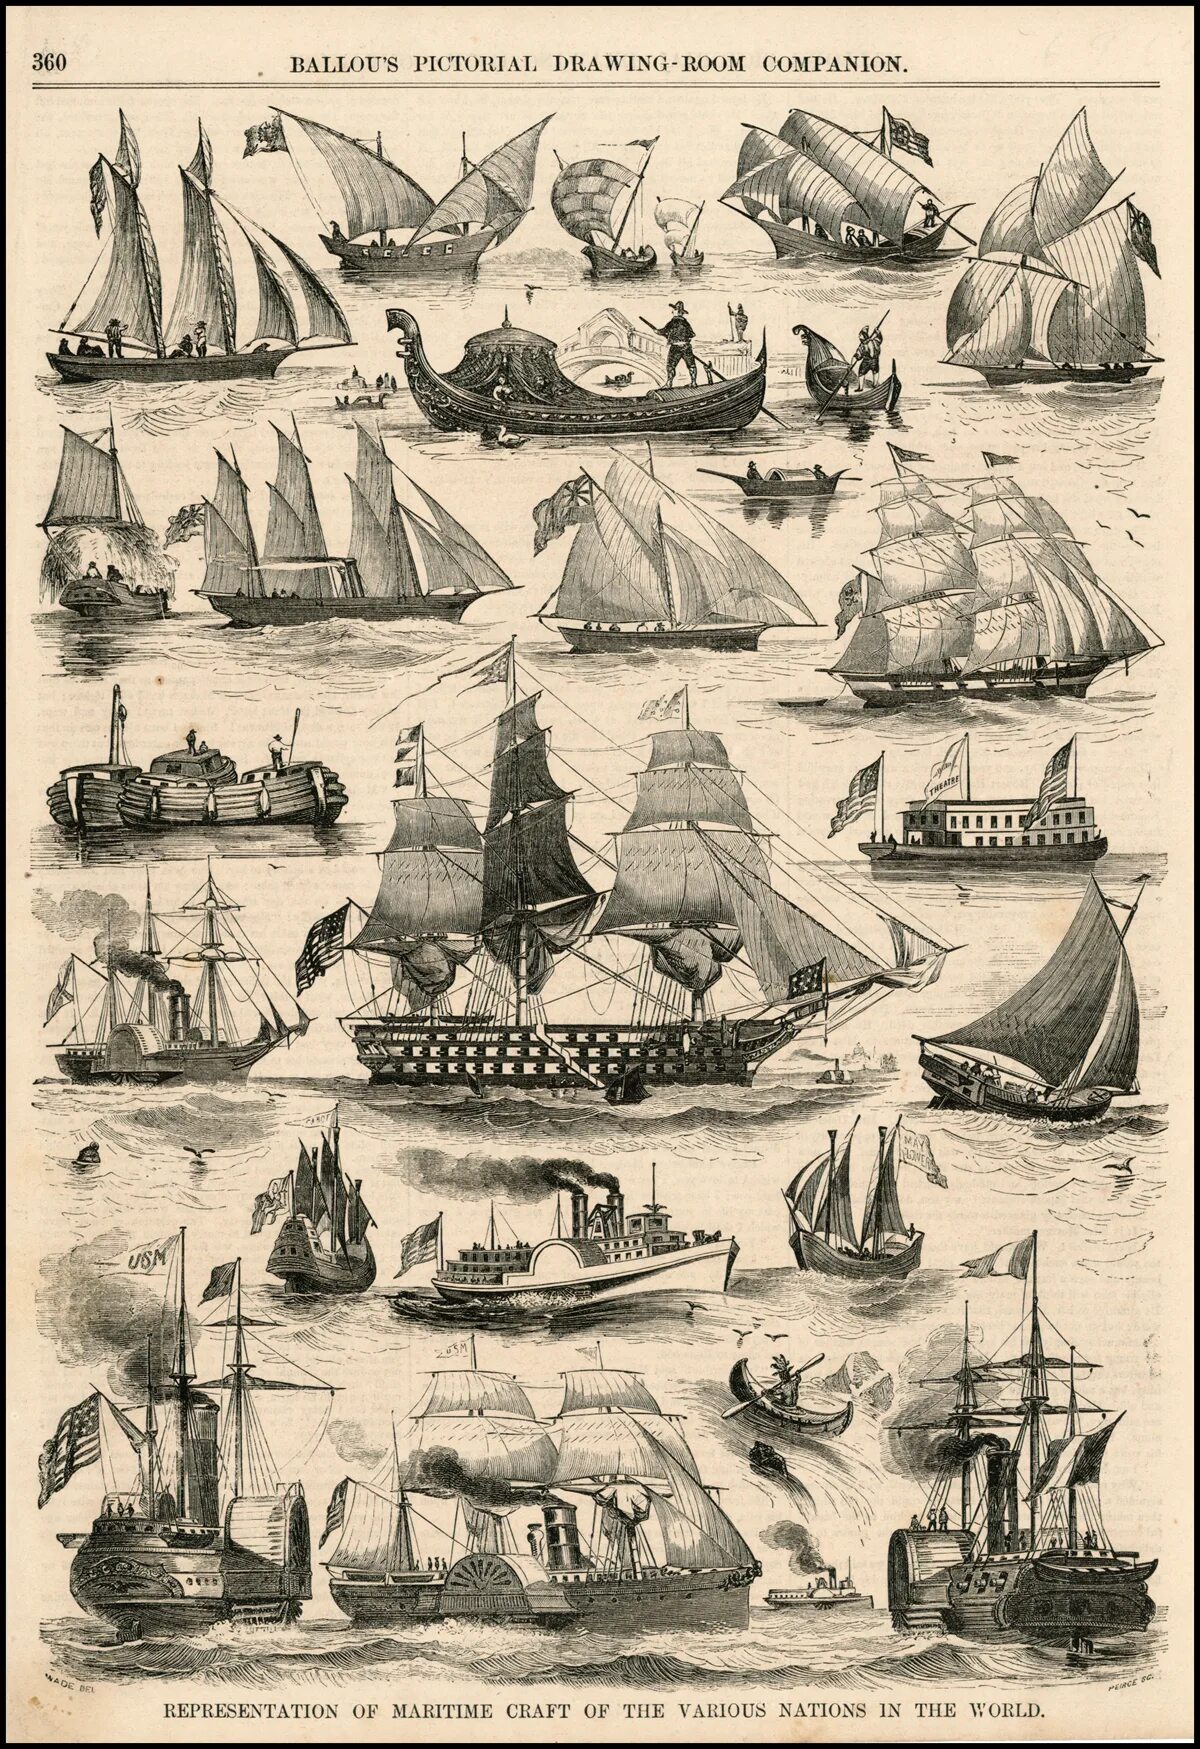 Тип парусного судна. Классификация парусных кораблей 18 века. Типы военных парусных кораблей 16-18 века. Классификация парусных кораблей 17 века. Классификация парусных кораблей 16-18 века.